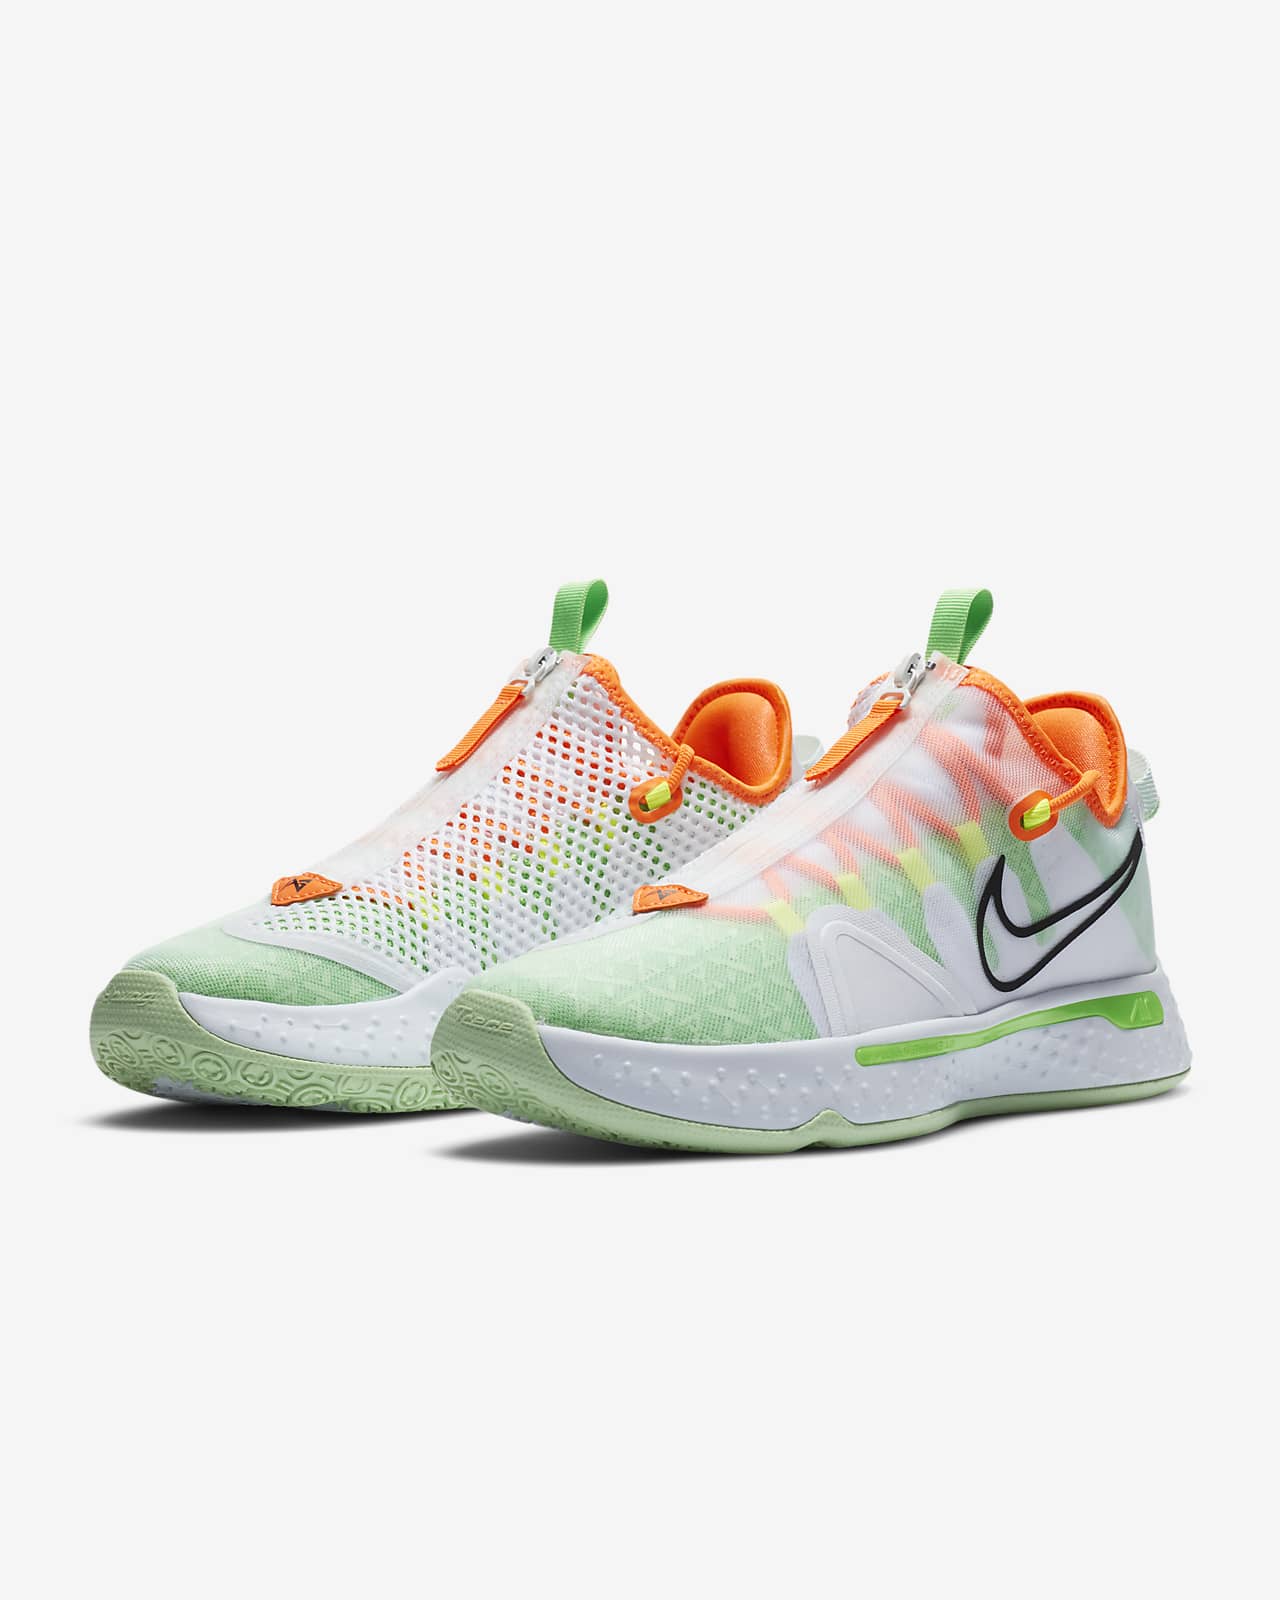 PG 4 Gatorade Basketball Shoe. Nike.com